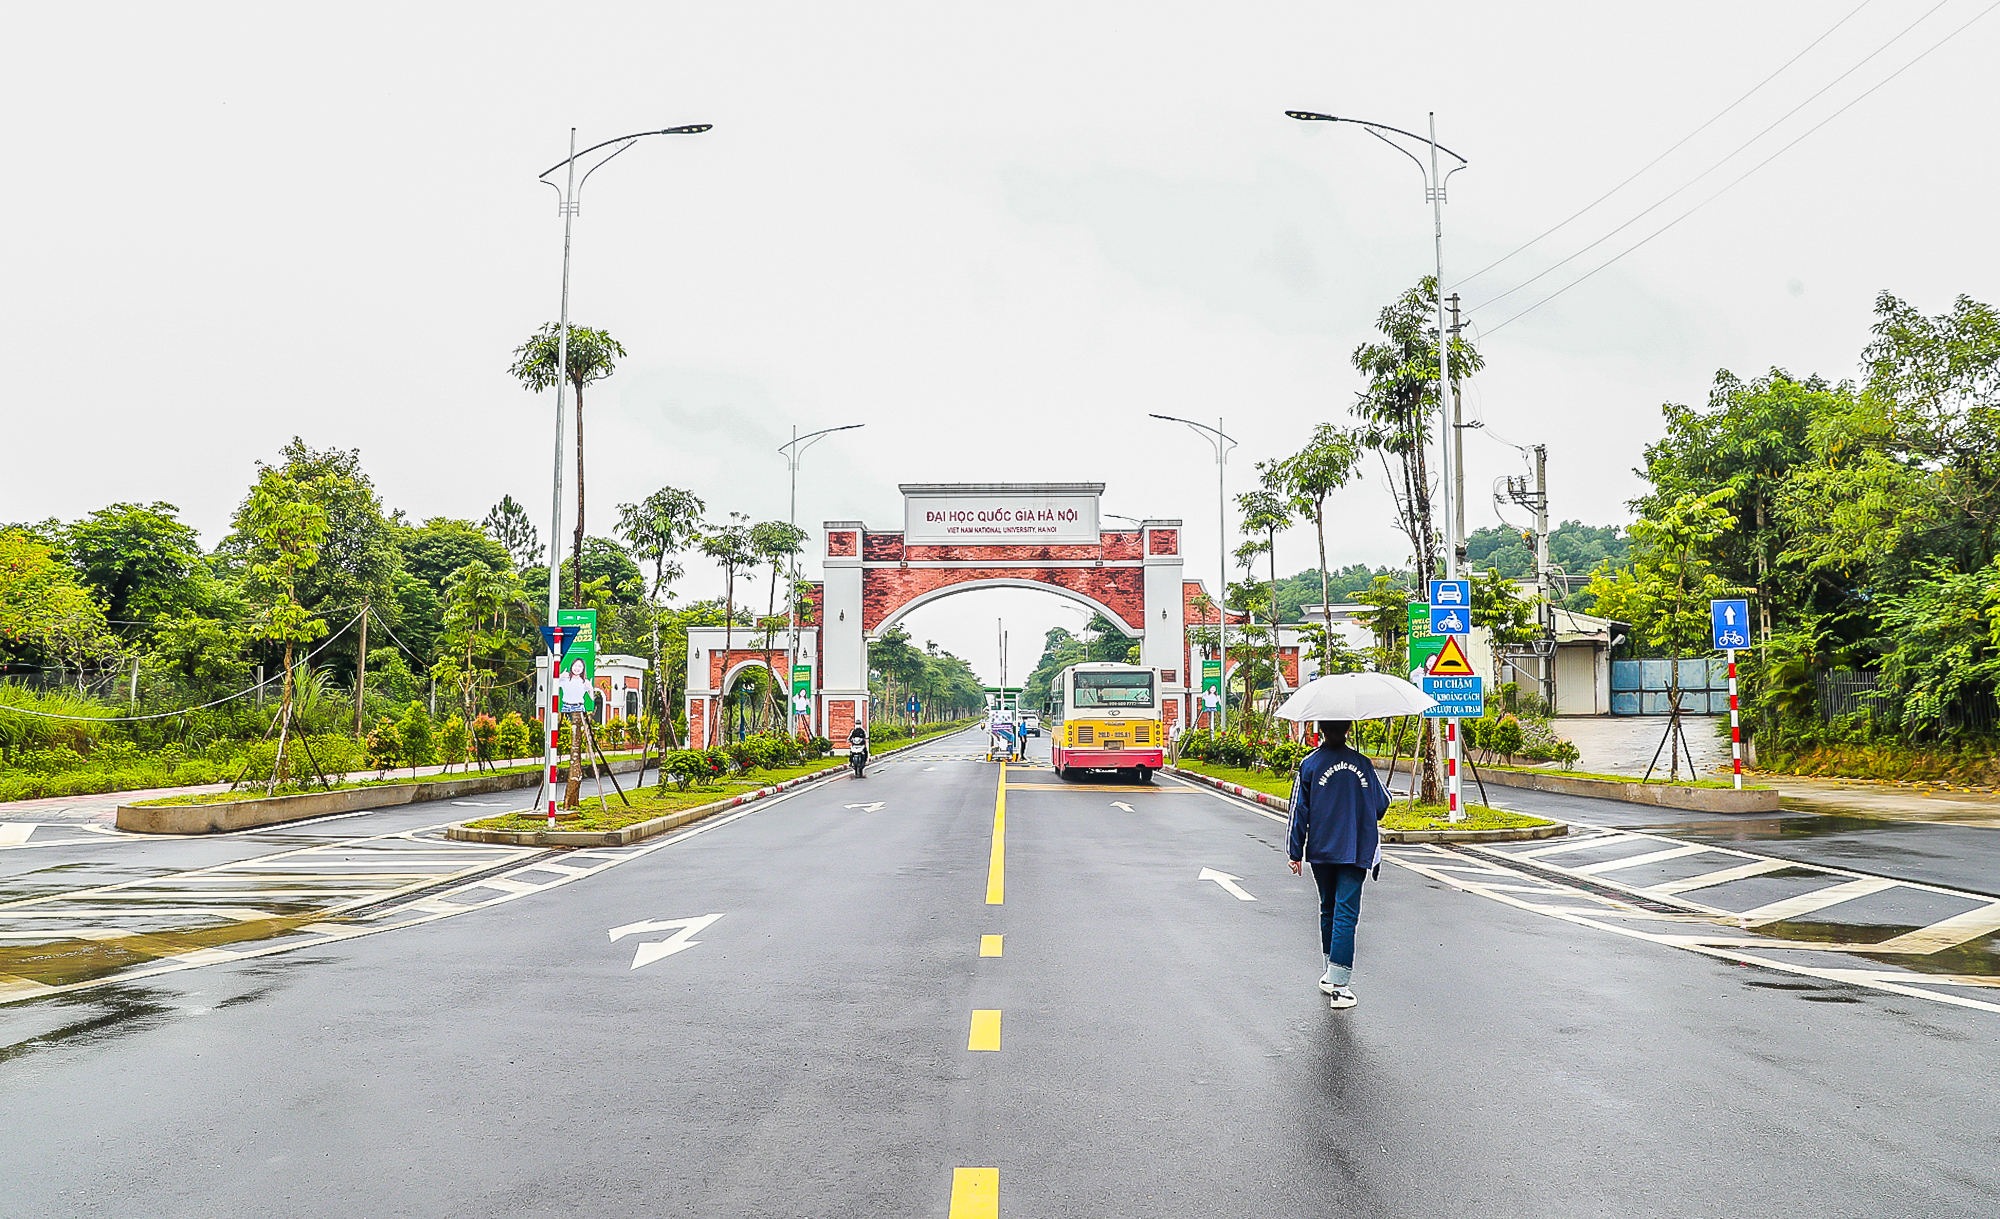 Đại học rộng nhất Việt Nam - diện tích gấp đôi quận Hoàn Kiếm, Hà Nội - Ảnh 1.